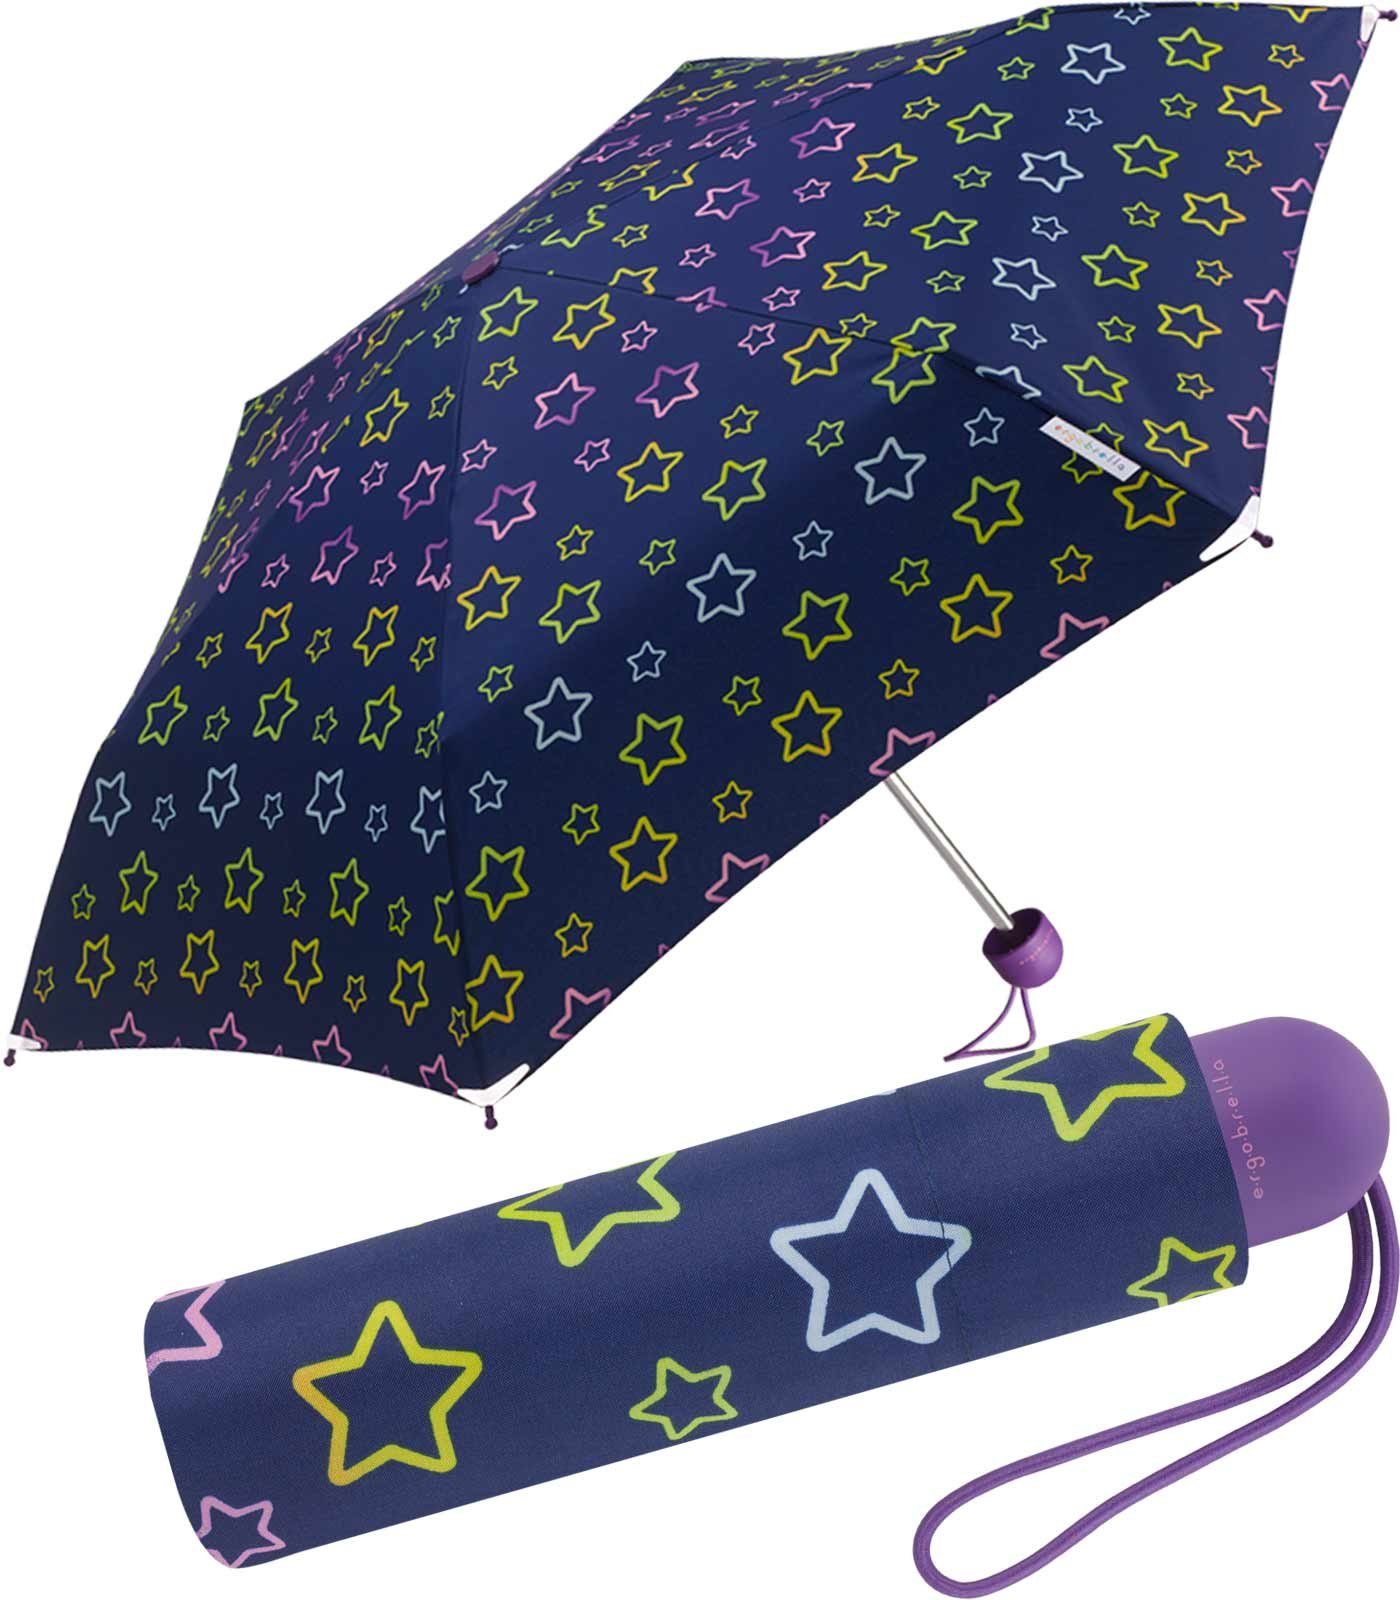 der für Mini Taschenschirm mit Basic Typ Ergobrella, Kinder Marke Kinderschirm fantasievoll, RAIN bedruckt, HAPPY Taschenregenschirm reflektierend und farbenfroh Regenschirm